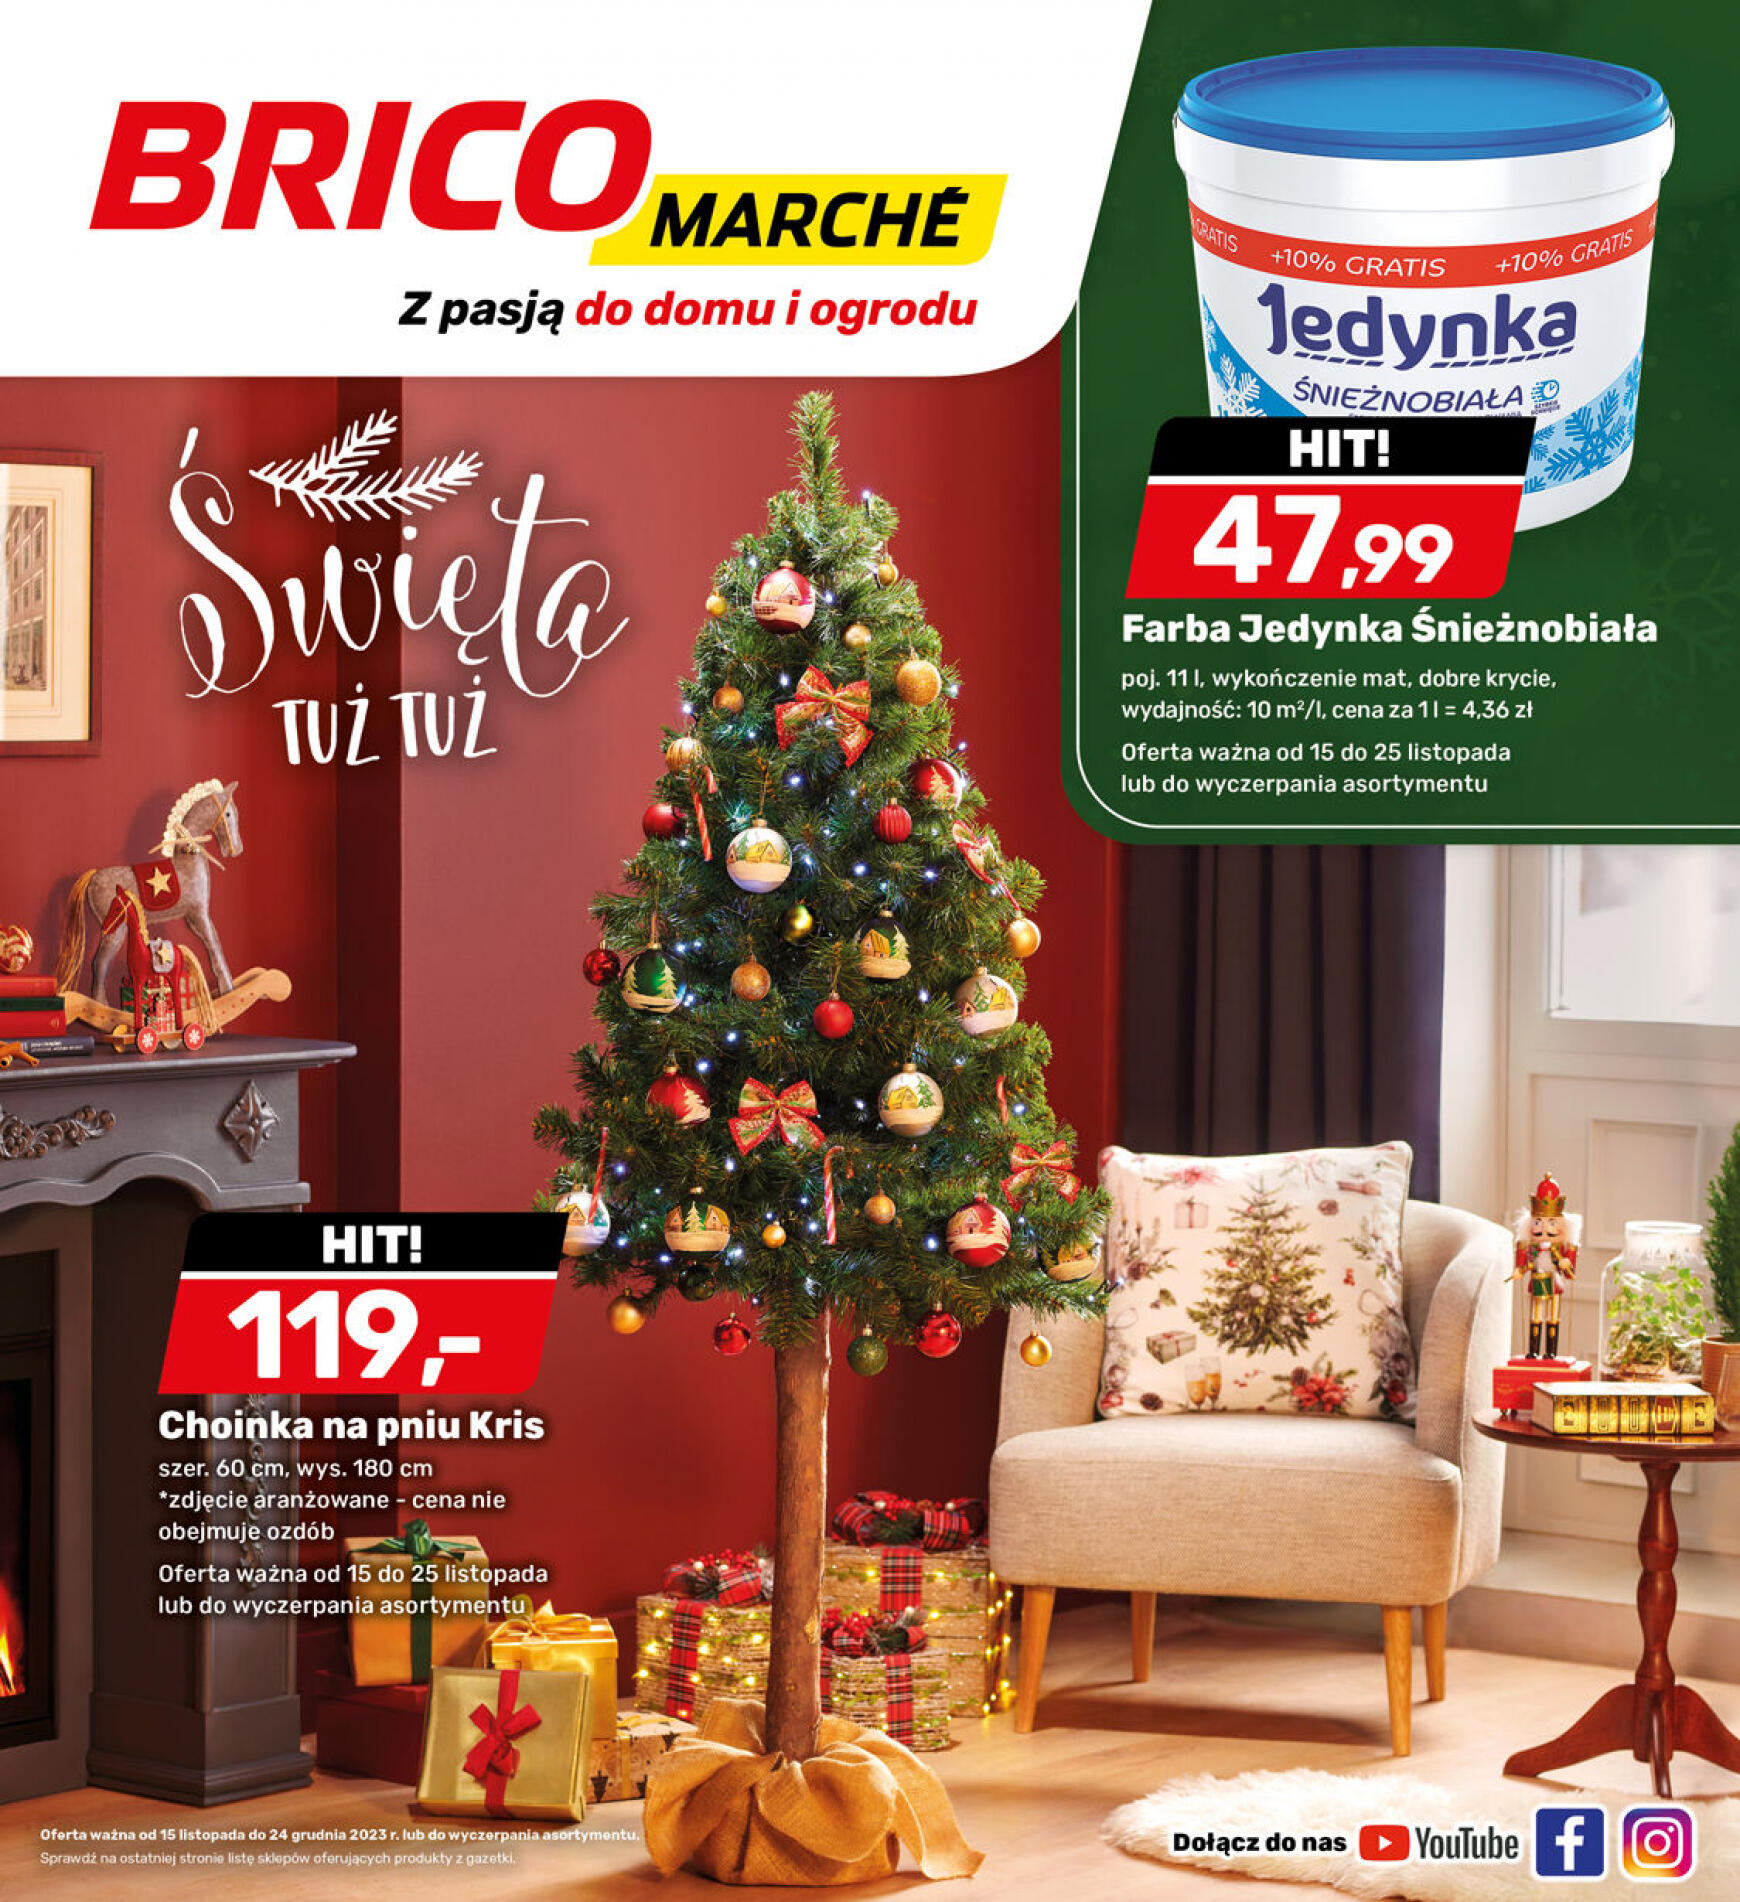 brico-marche - - Bricomarche - page: 11